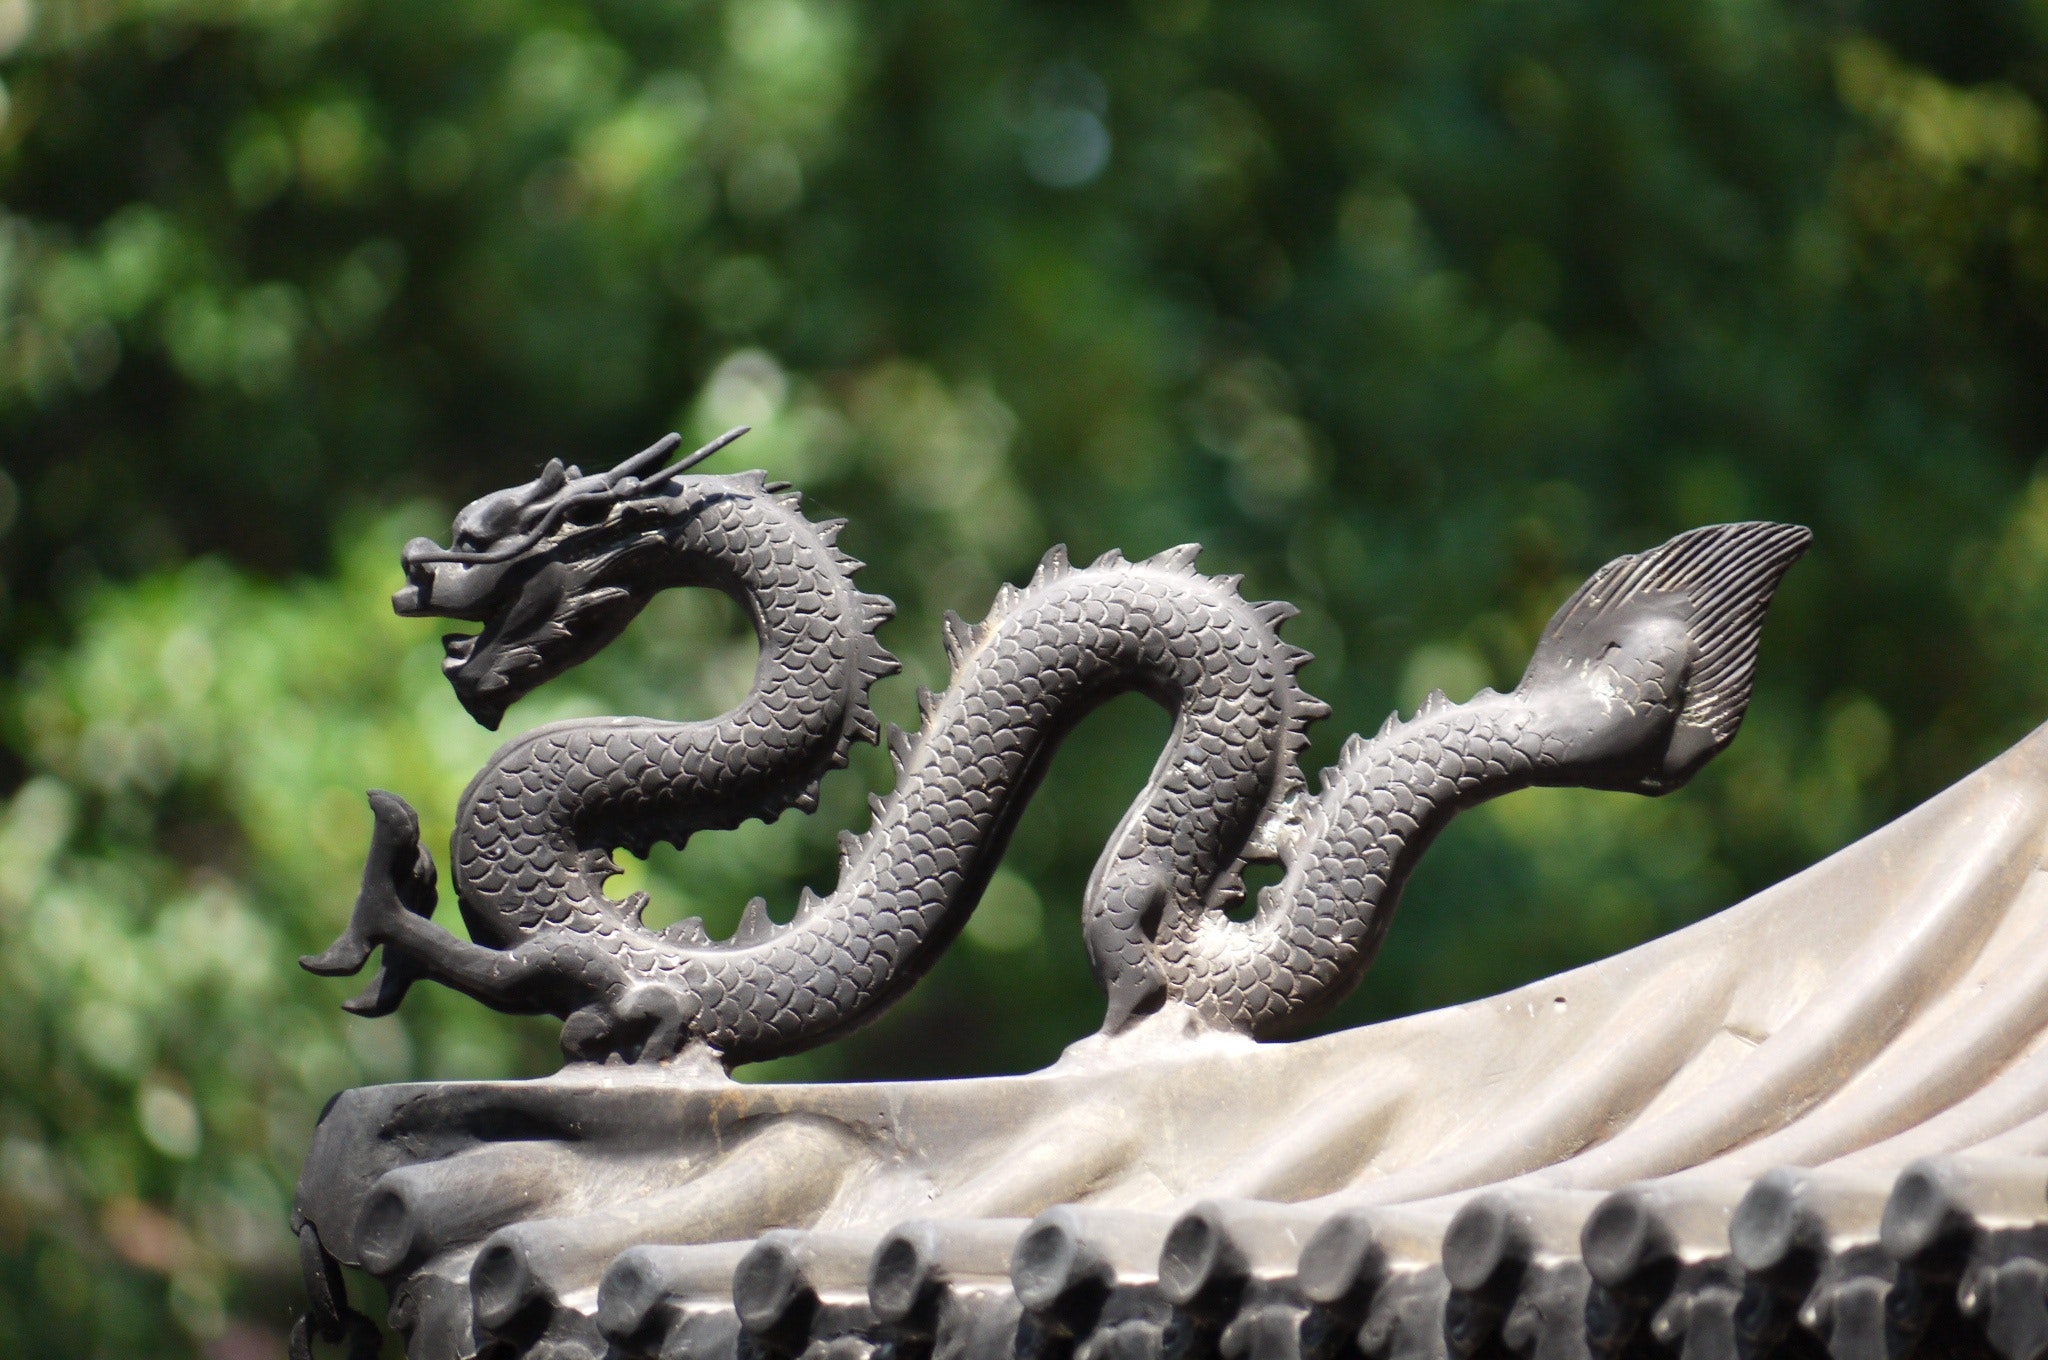 A gray dragon statue.